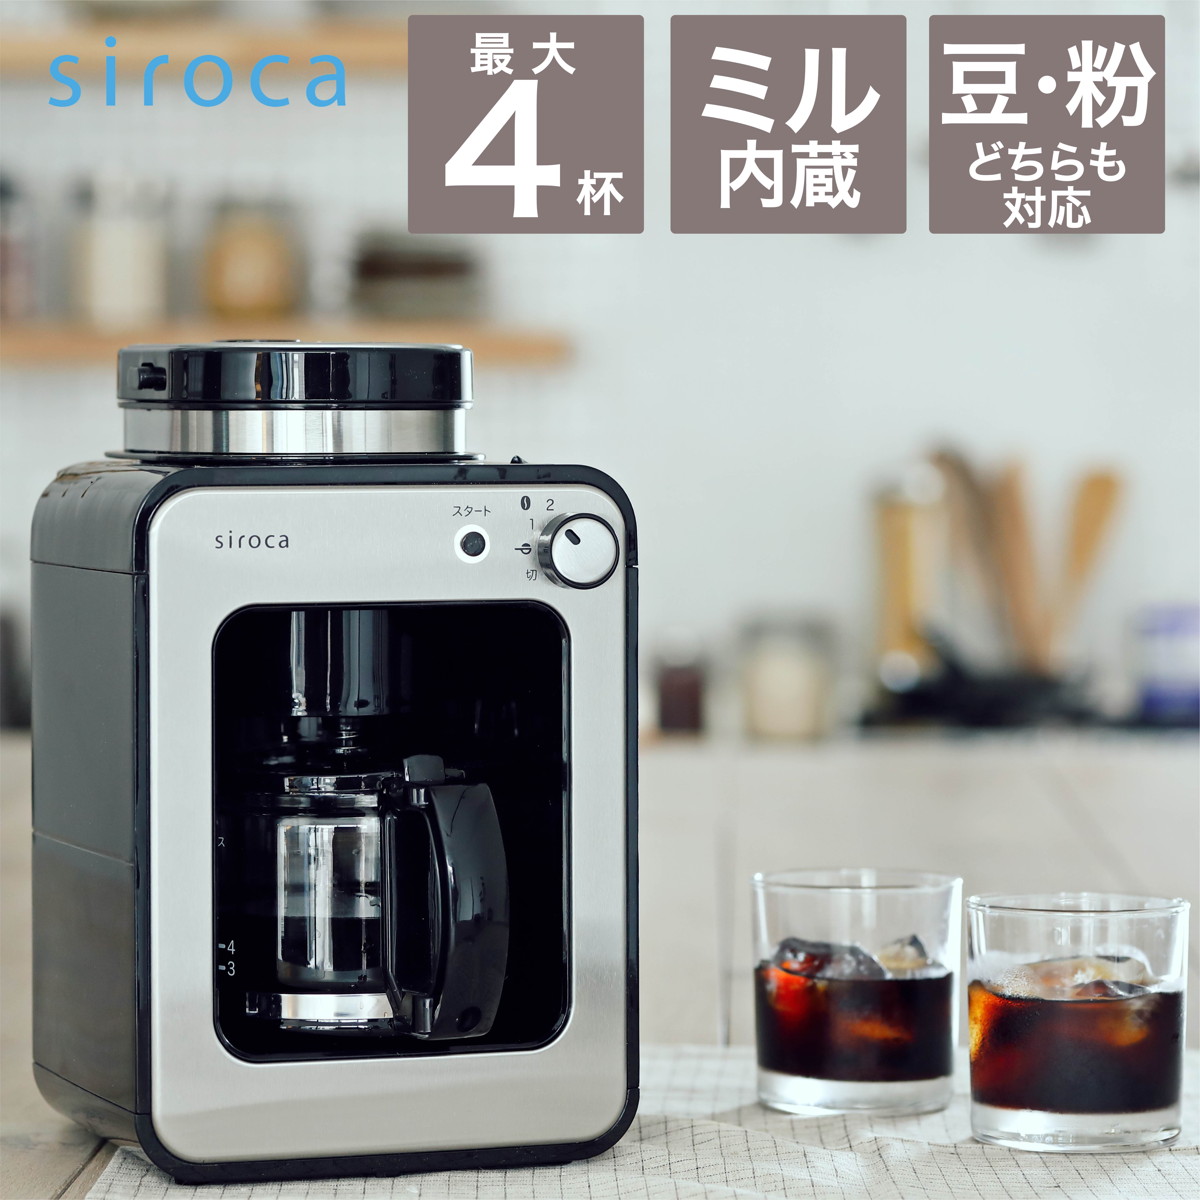 siroca 全自動コーヒーメーカー アイスコーヒー対応 静音 コンパクト ミル2段階 豆/粉両対応 蒸らし ガラスサーバー ステンレスシルバー (K/SS)